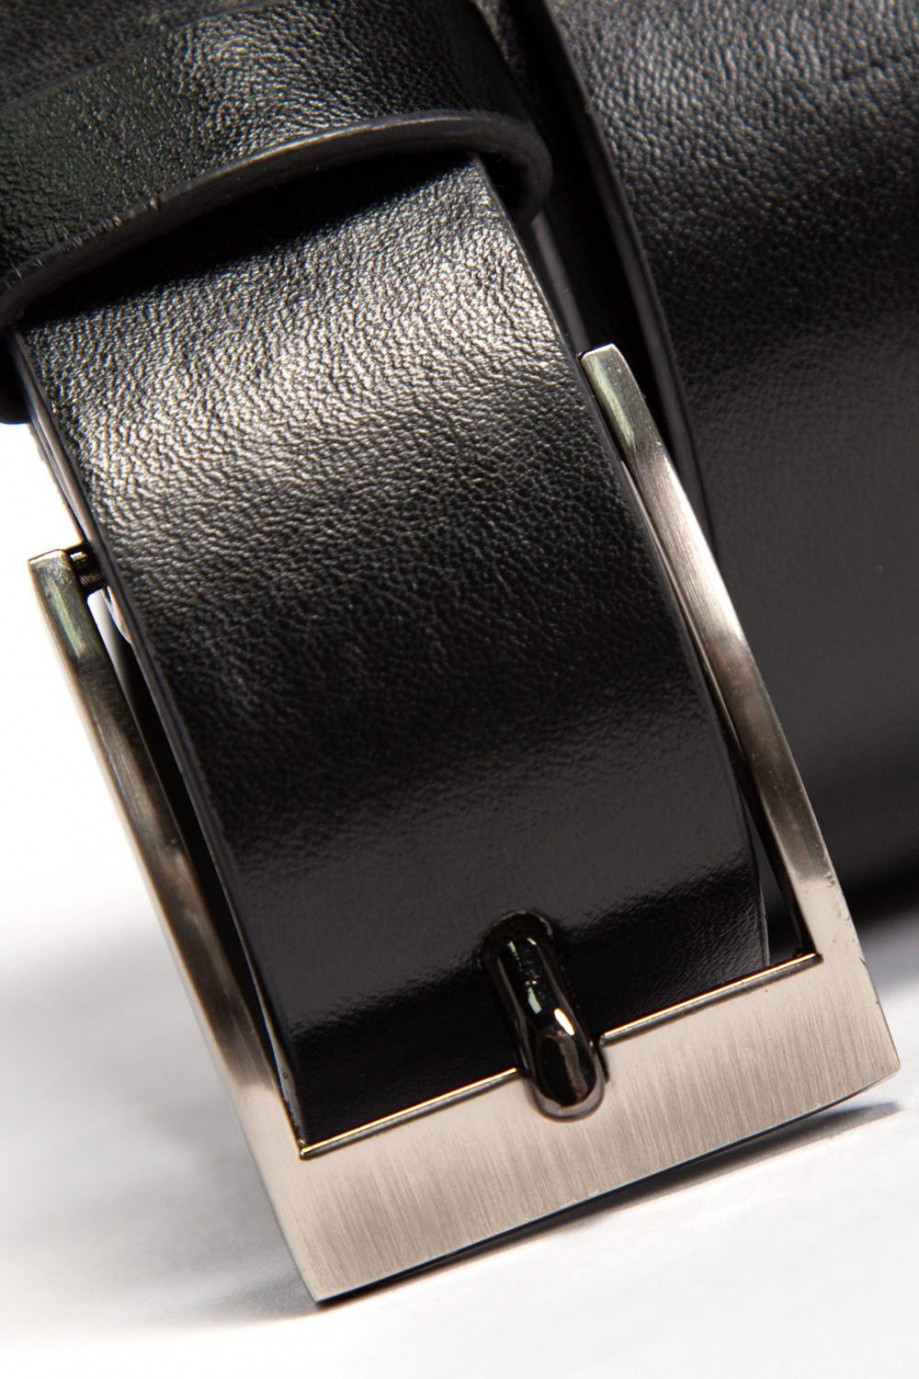 Cinturón negro en cuerina con hebilla metálica cuadrada